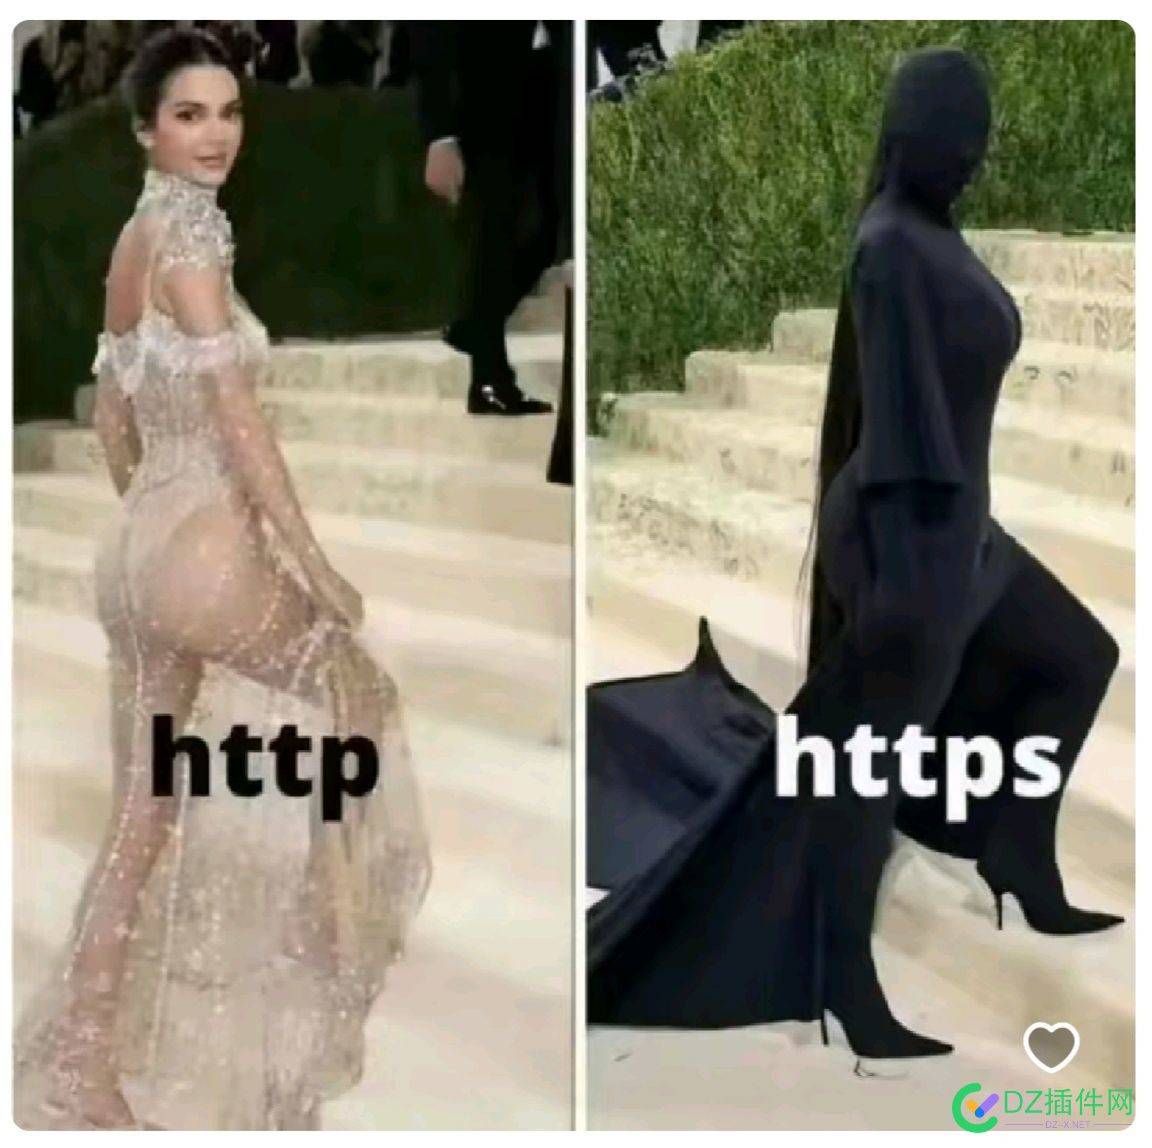 http 和 HTTPS 的区别 点微,可可,西瓜,it618